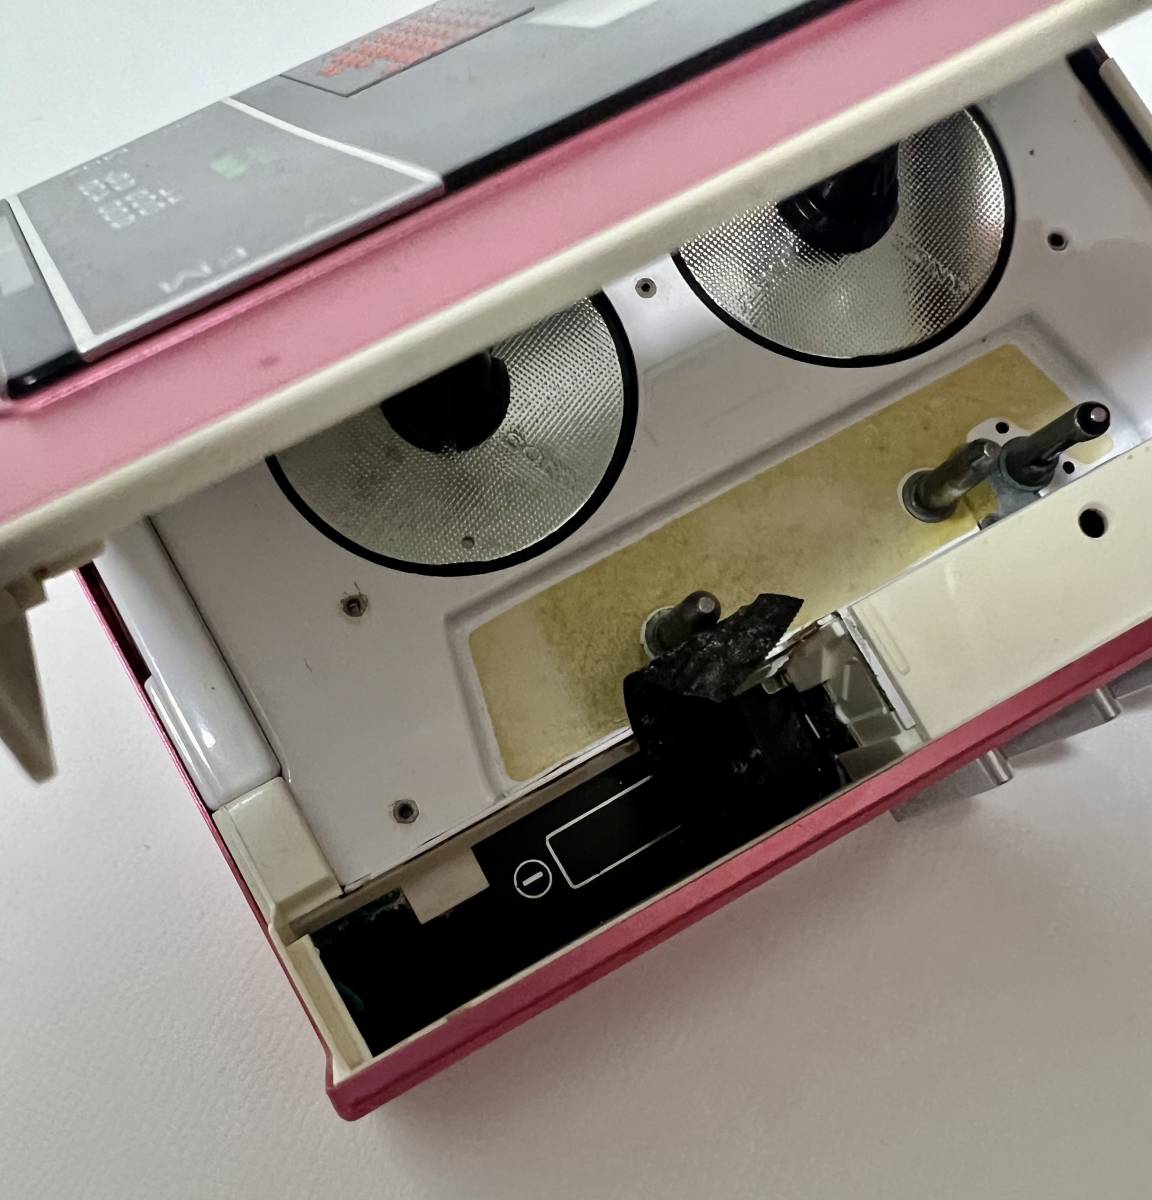  junk SONY Sony Walkman WALKMAN WM-F20 pink made in Japan cassette player 